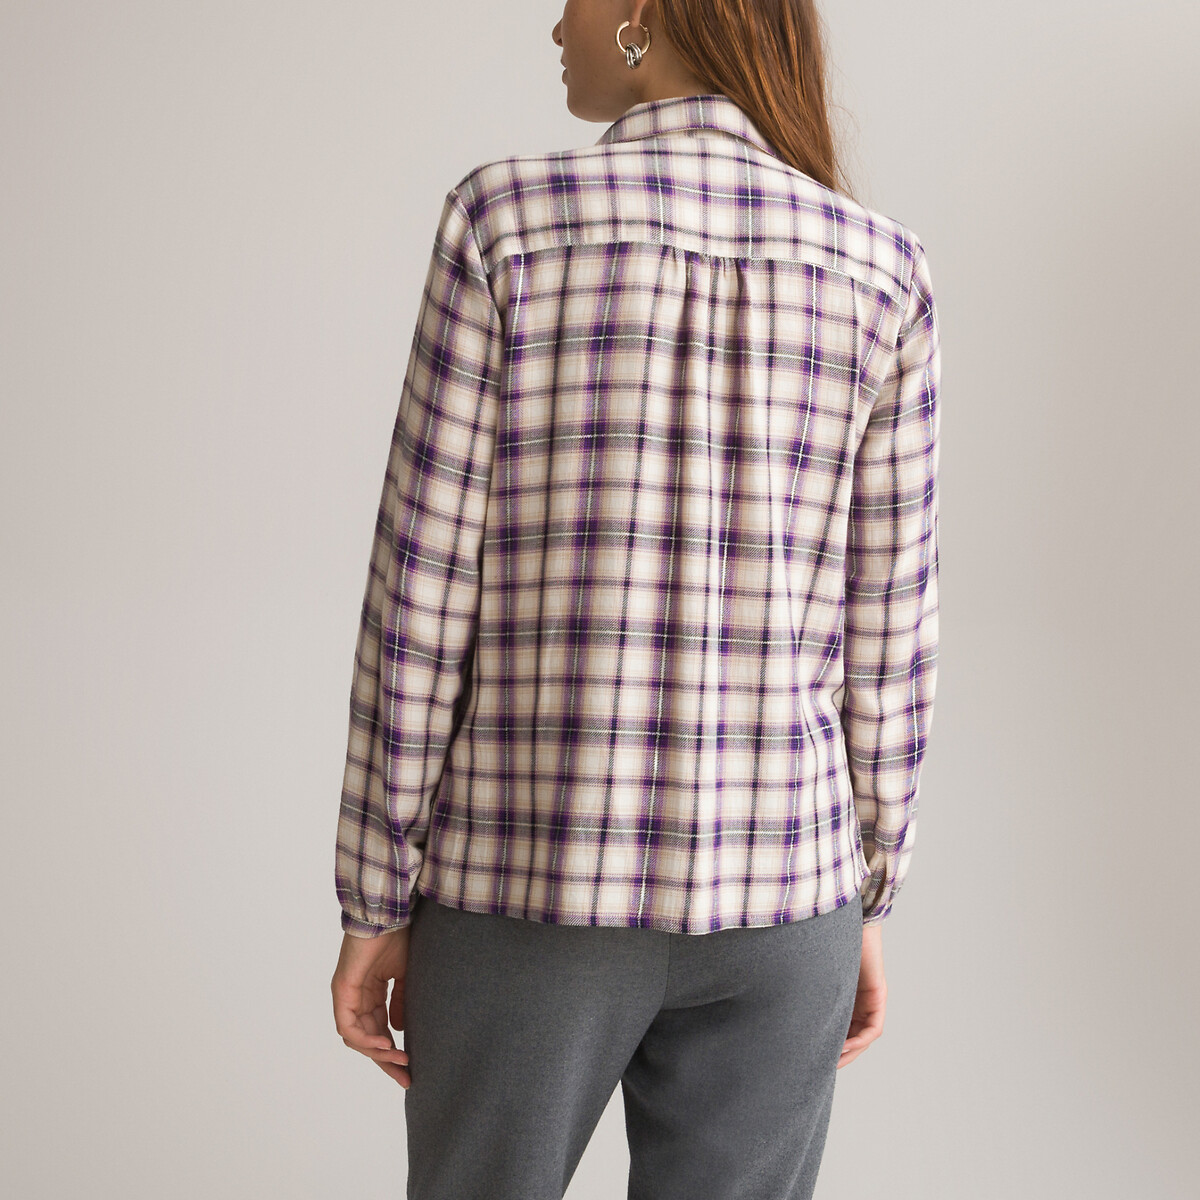 Рубашка в клетку с длинными рукавами  36 (FR) - 42 (RUS) фиолетовый LaRedoute, размер 36 (FR) - 42 (RUS) Рубашка в клетку с длинными рукавами  36 (FR) - 42 (RUS) фиолетовый - фото 4